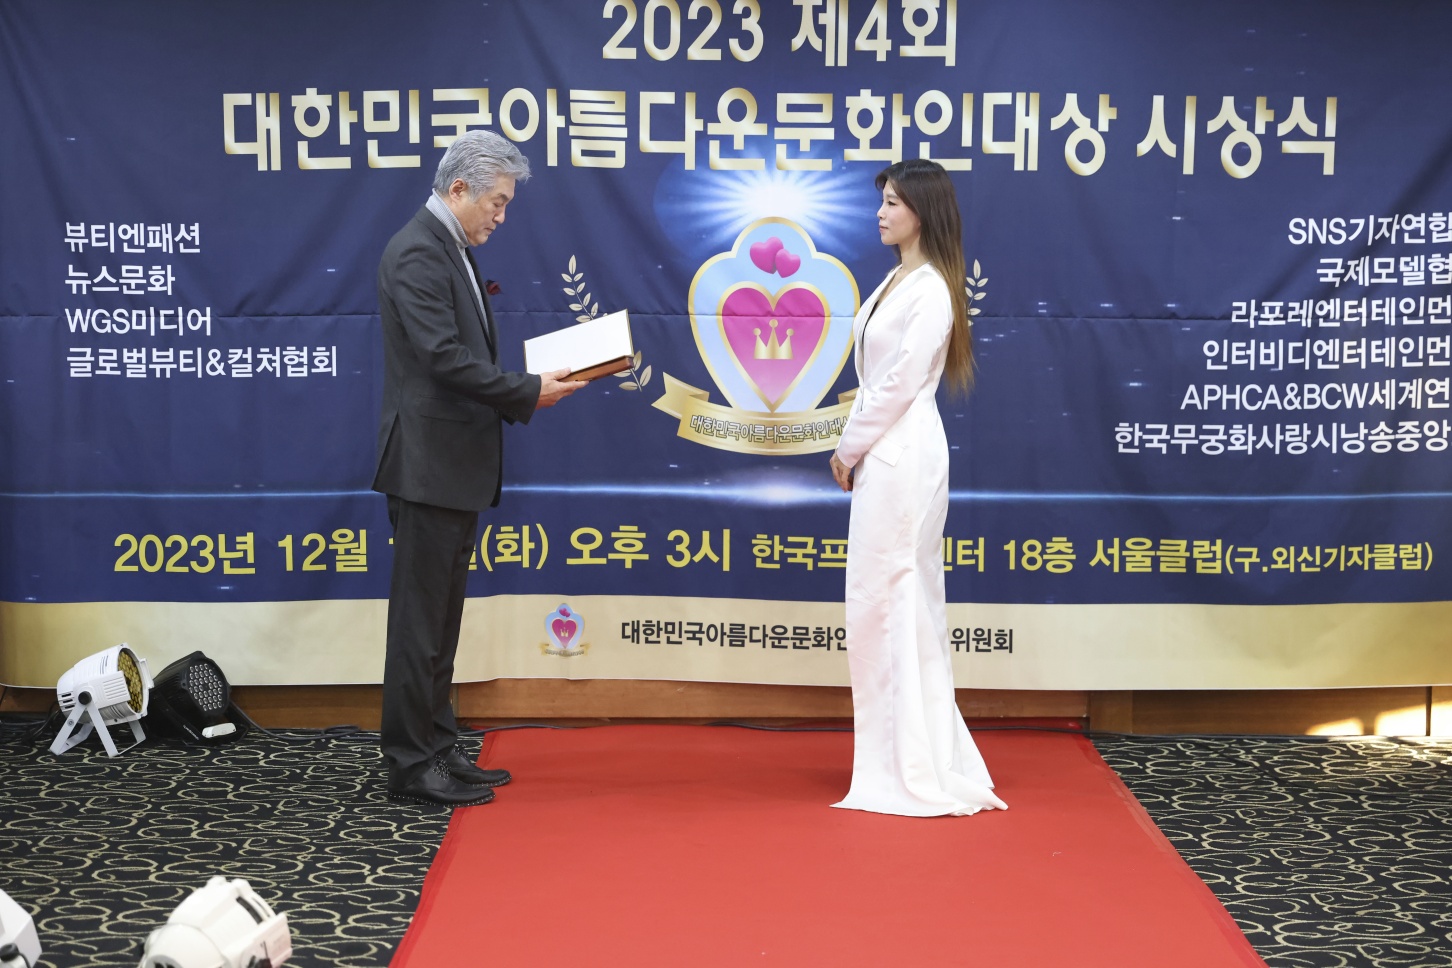 시니어화보집 “더브리에” 2023 제4회 대한민국아름다운문화인대상 시상식”에서 “우수문화콘텐츠개발상” 수상